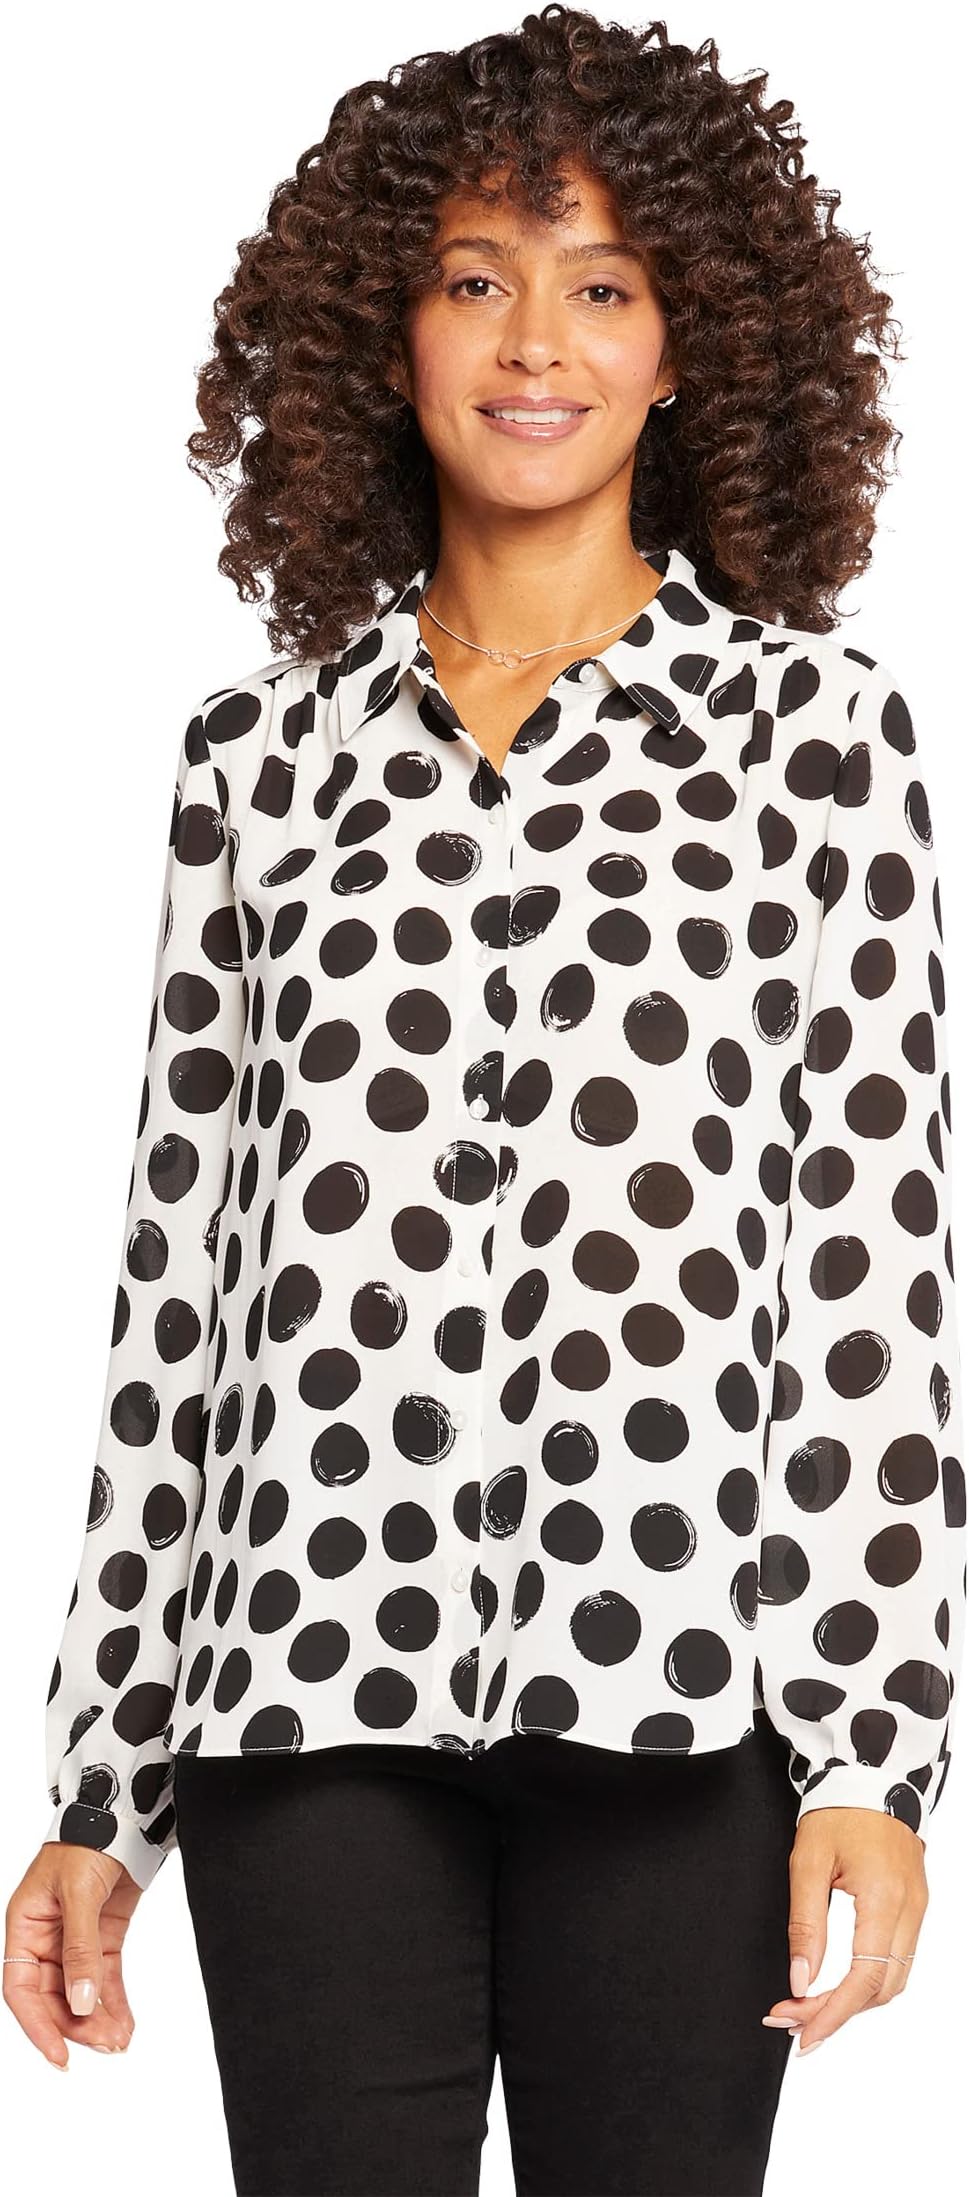 Современная блузка NYDJ, цвет Ramona Dots блузка без рукавов больших размеров с подвернутой булавкой nydj цвет ramona dots